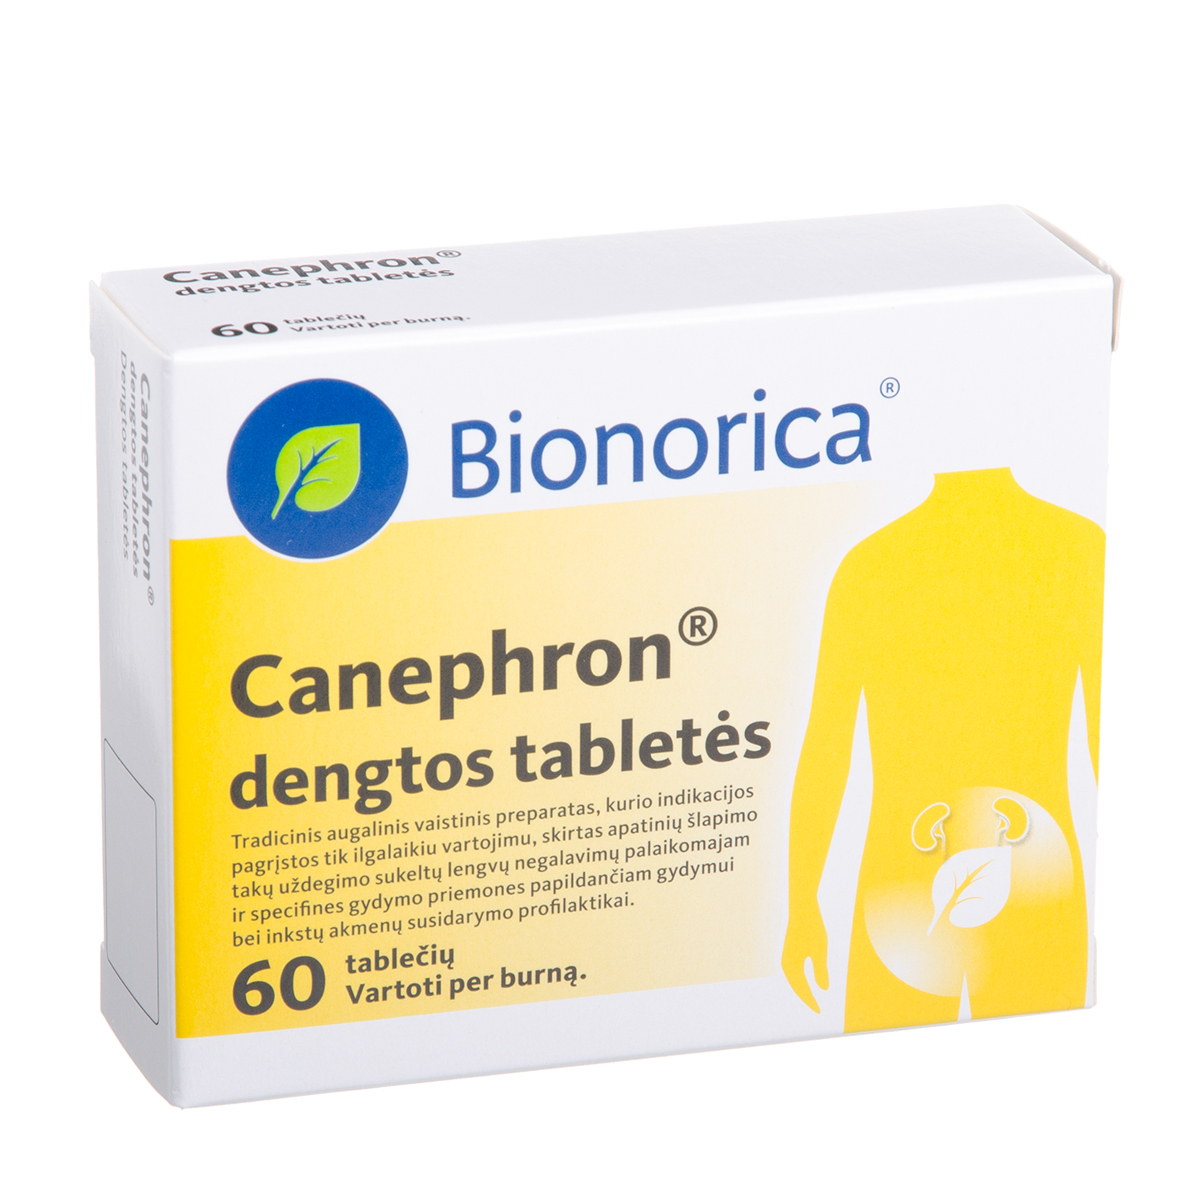 CANEPHRON, dengtos tabletės, N60